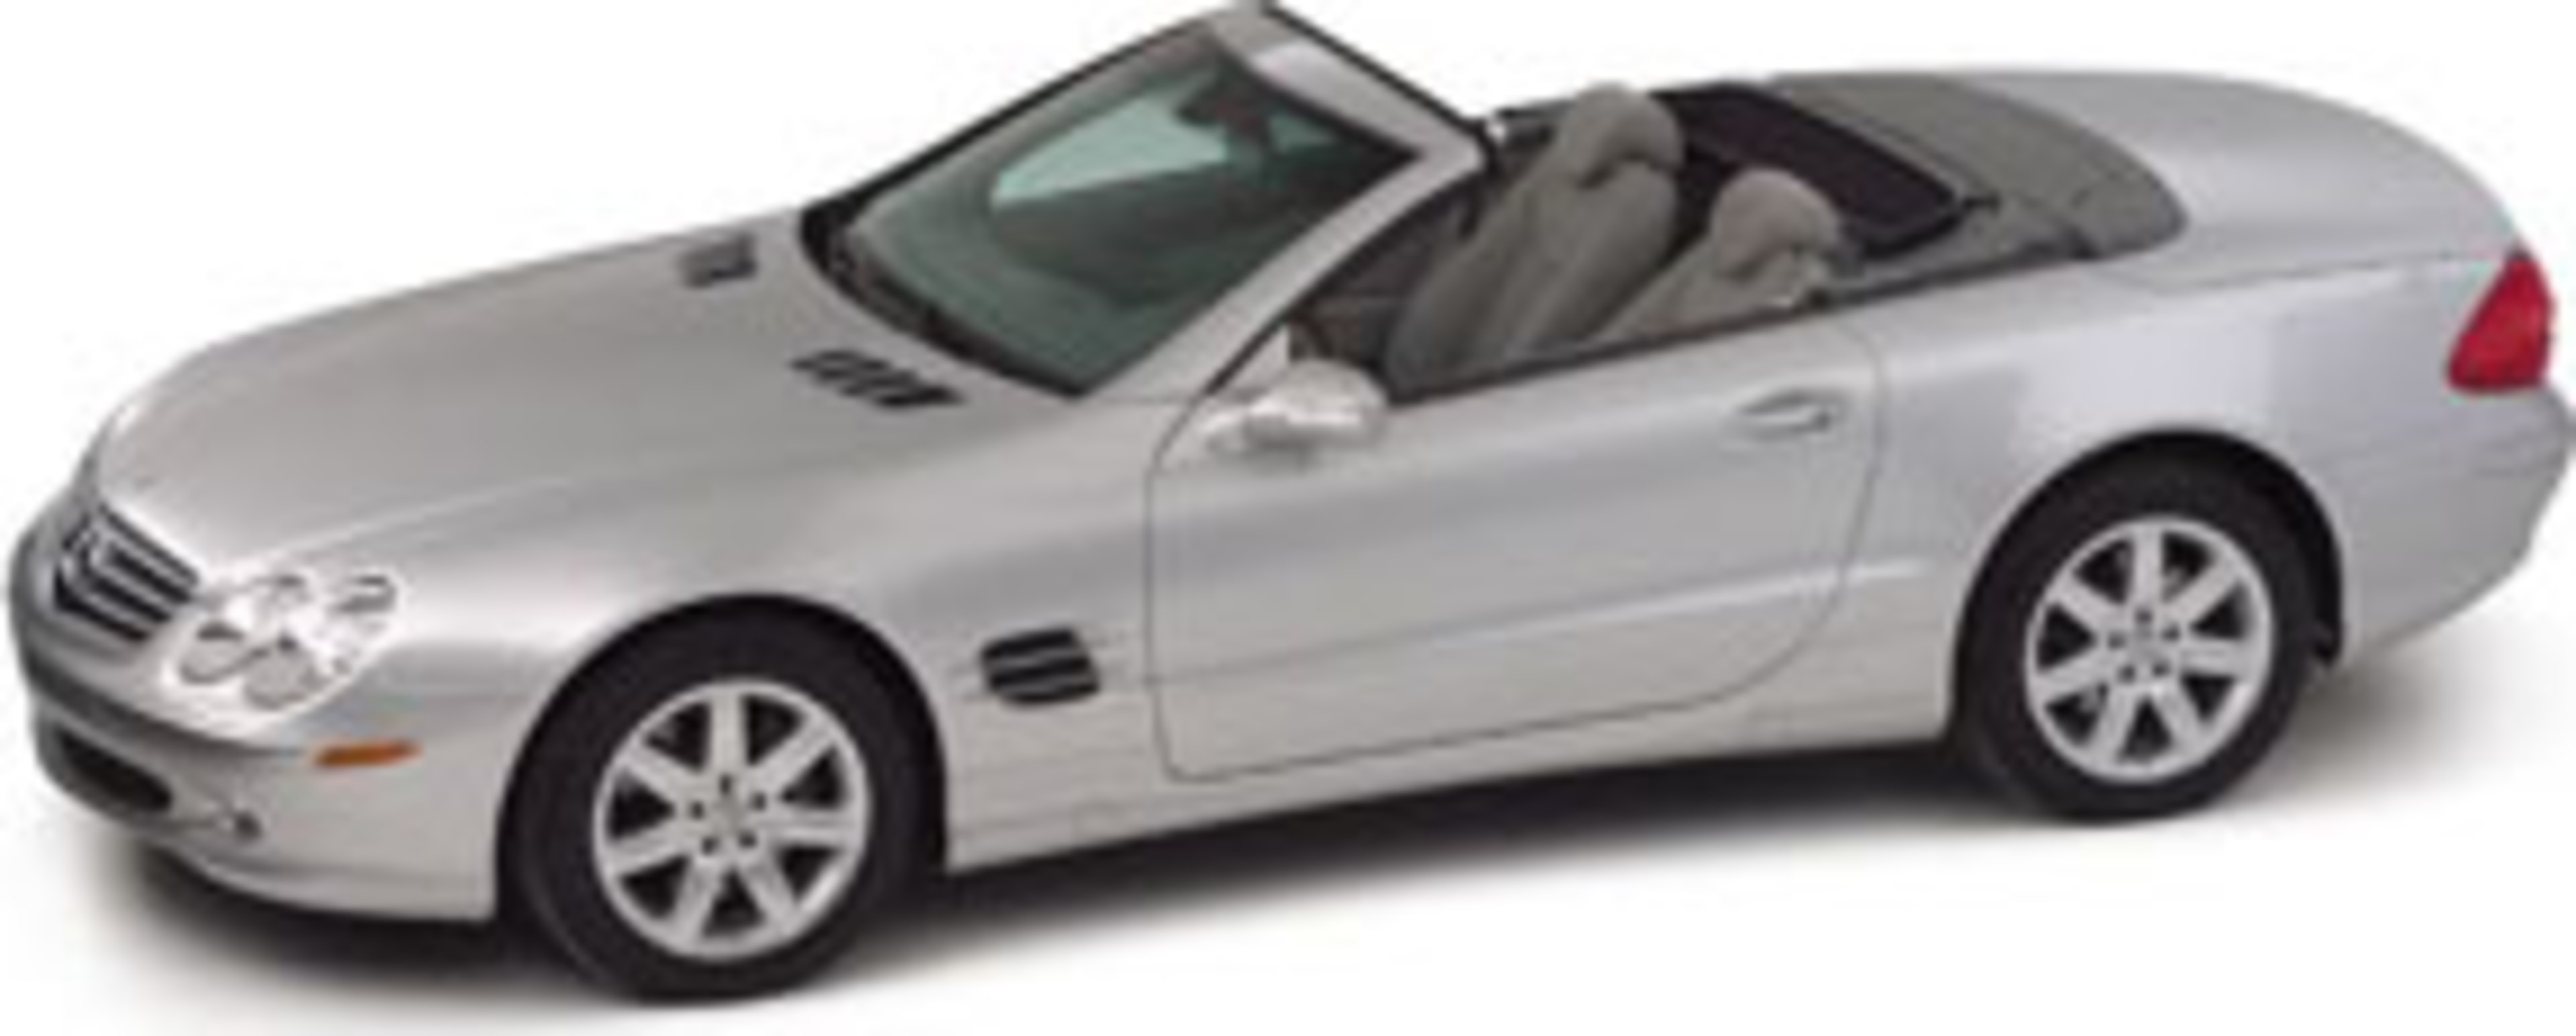 2004 Mercedes-Benz SL500 Service and Repair Manual